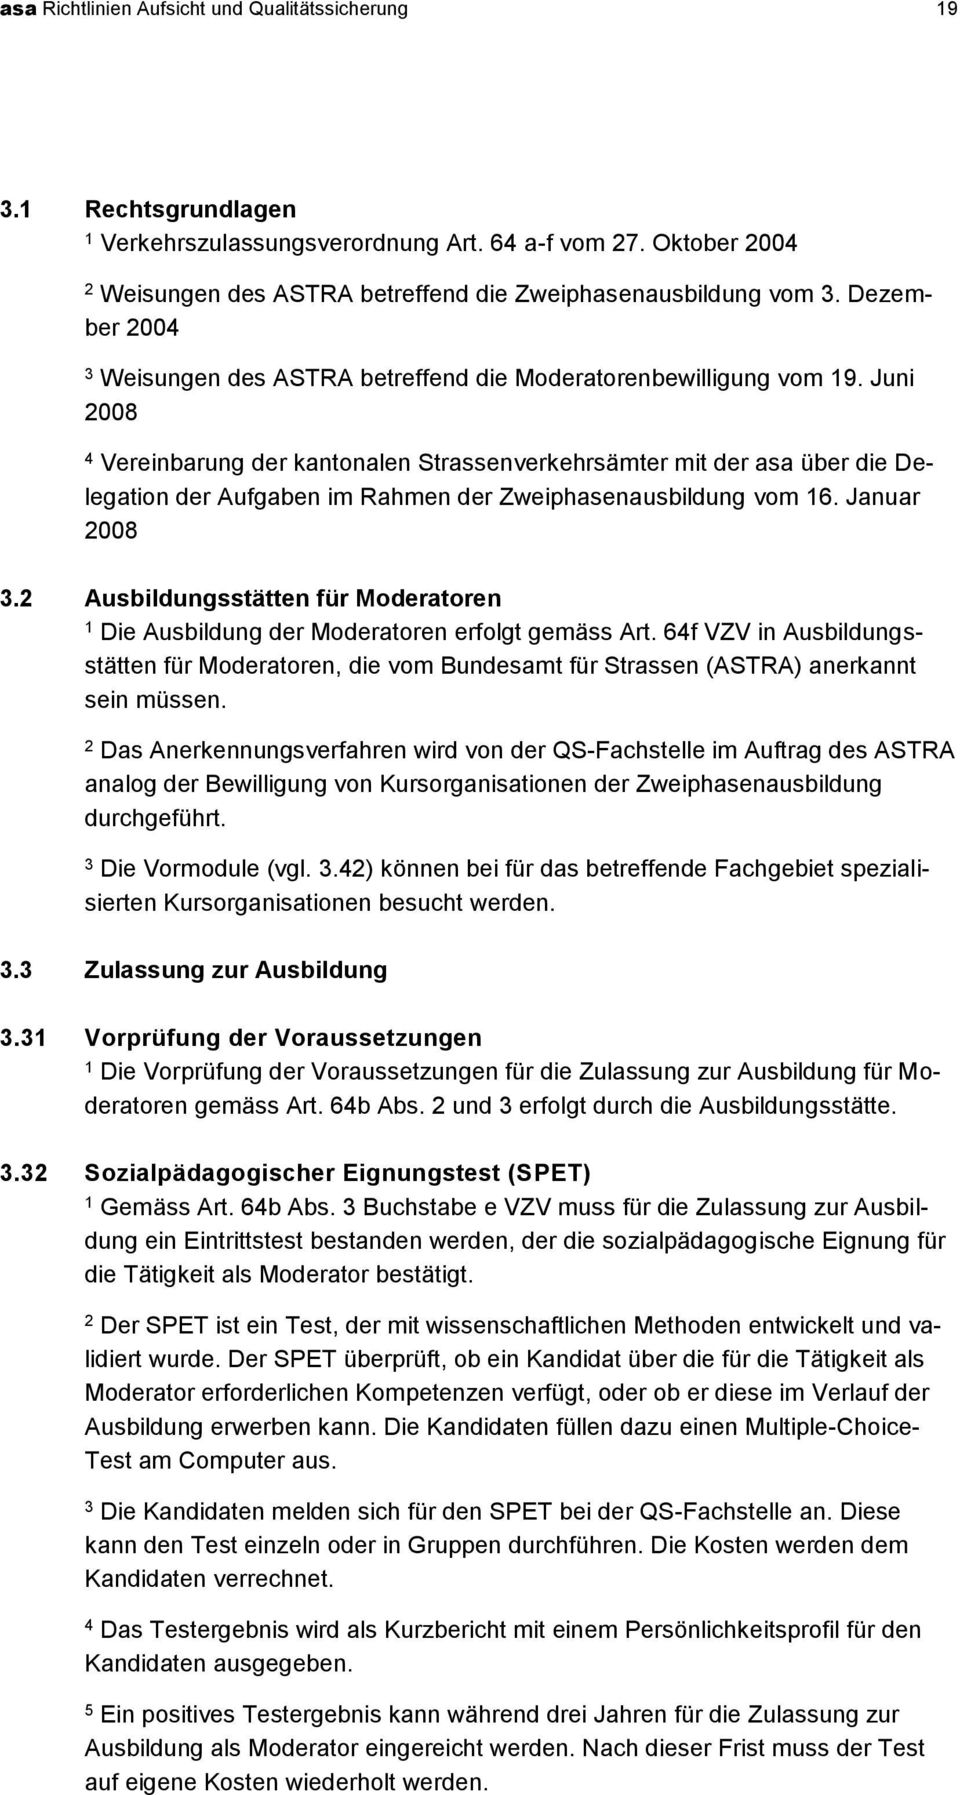 Juni 008 Vereinbarung der kantonalen Strassenverkehrsämter mit der asa über die Delegation der Aufgaben im Rahmen der Zweiphasenausbildung vom 6. Januar 008.